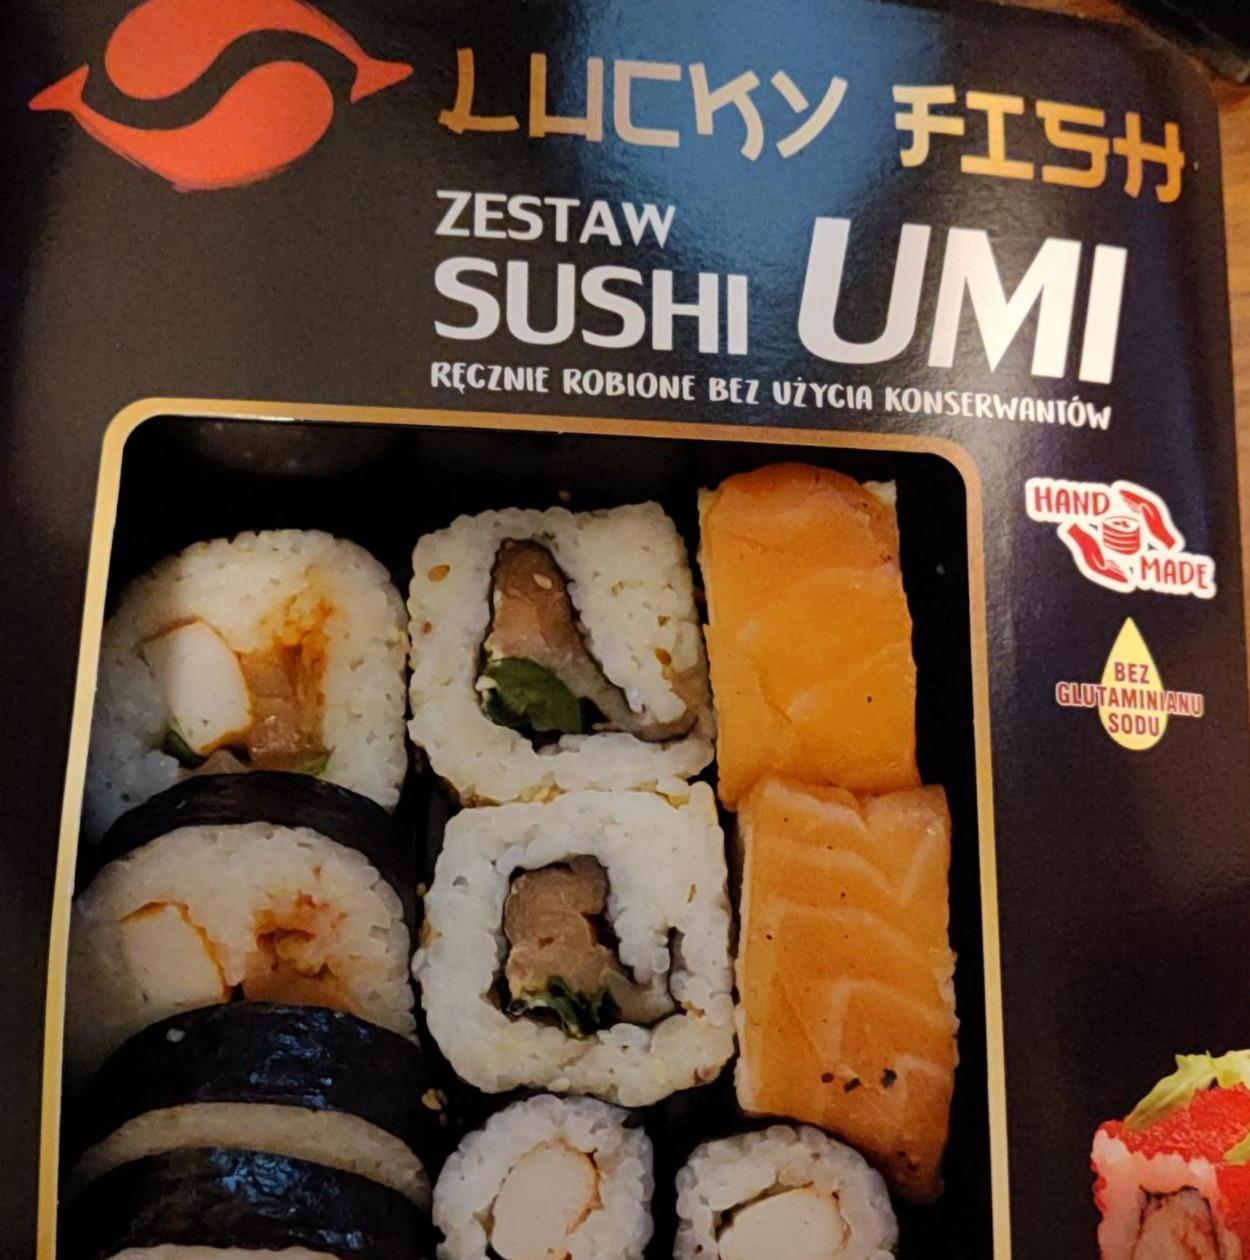 Zdjęcia - Zestaw Sushi Umi Lucky Fish